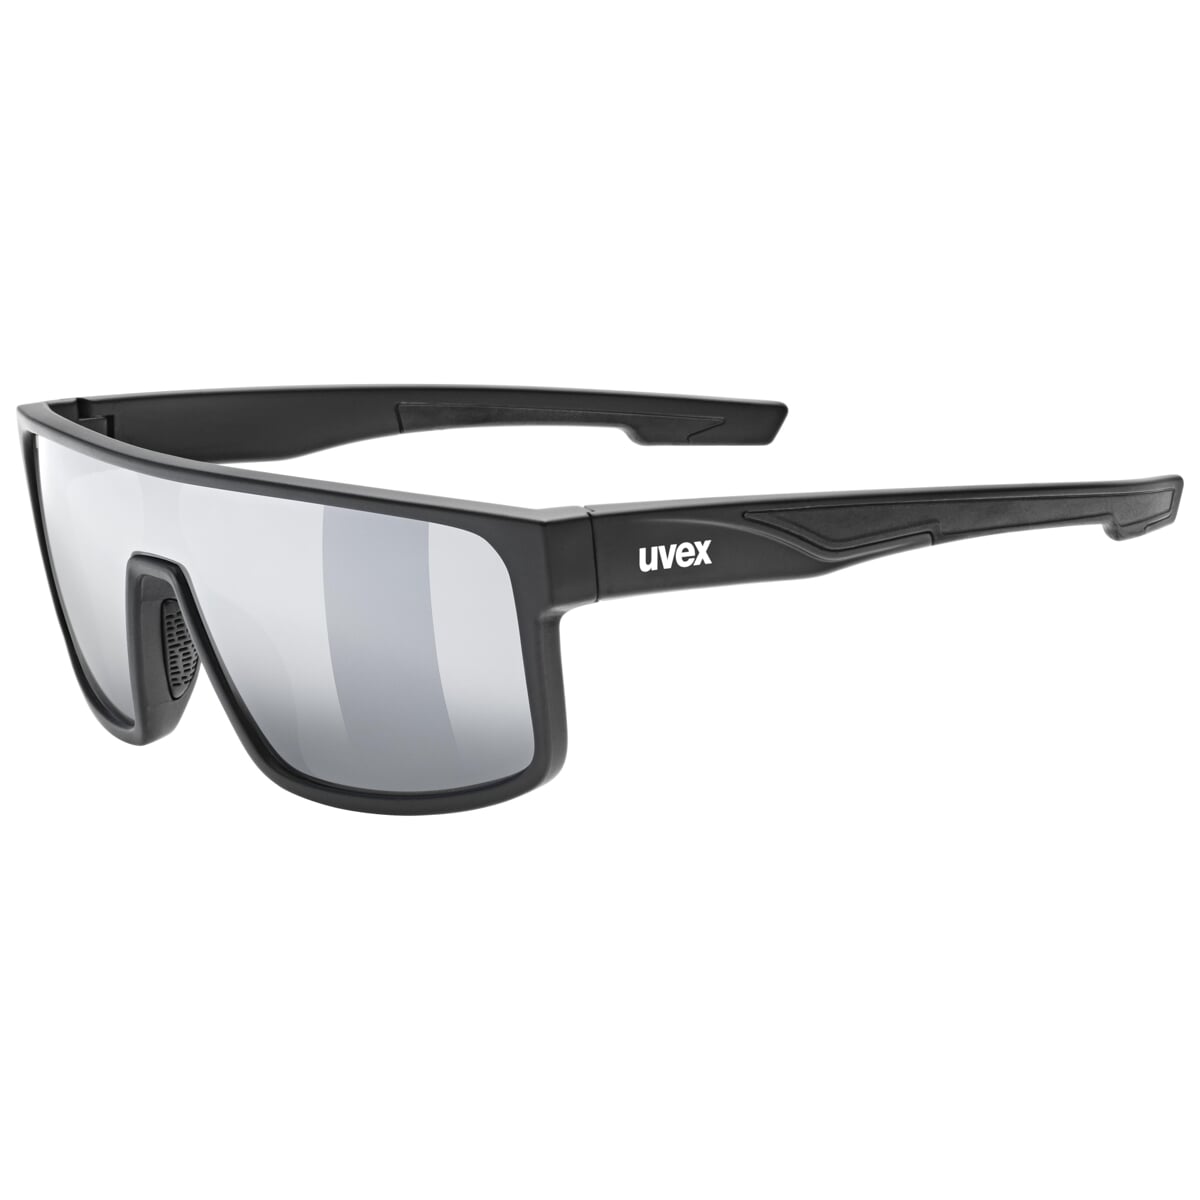 Univerzální sluneční brýle Uvex LGL 51 Black mat / mir. silver